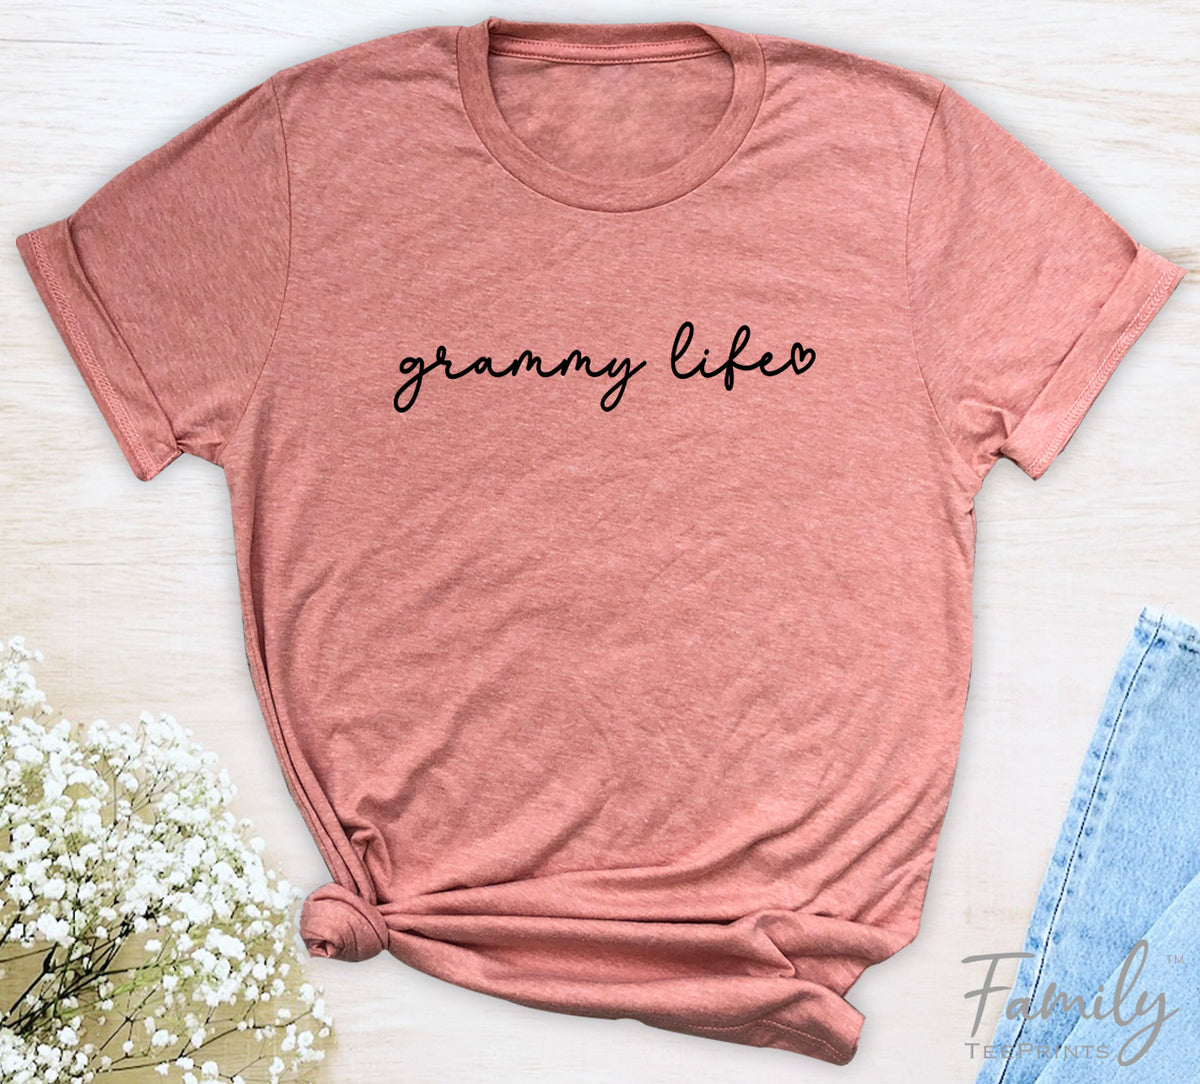 Grammy Life - Unisex T-shirt - Grammy Shirt - Gift For New Grammy - familyteeprints